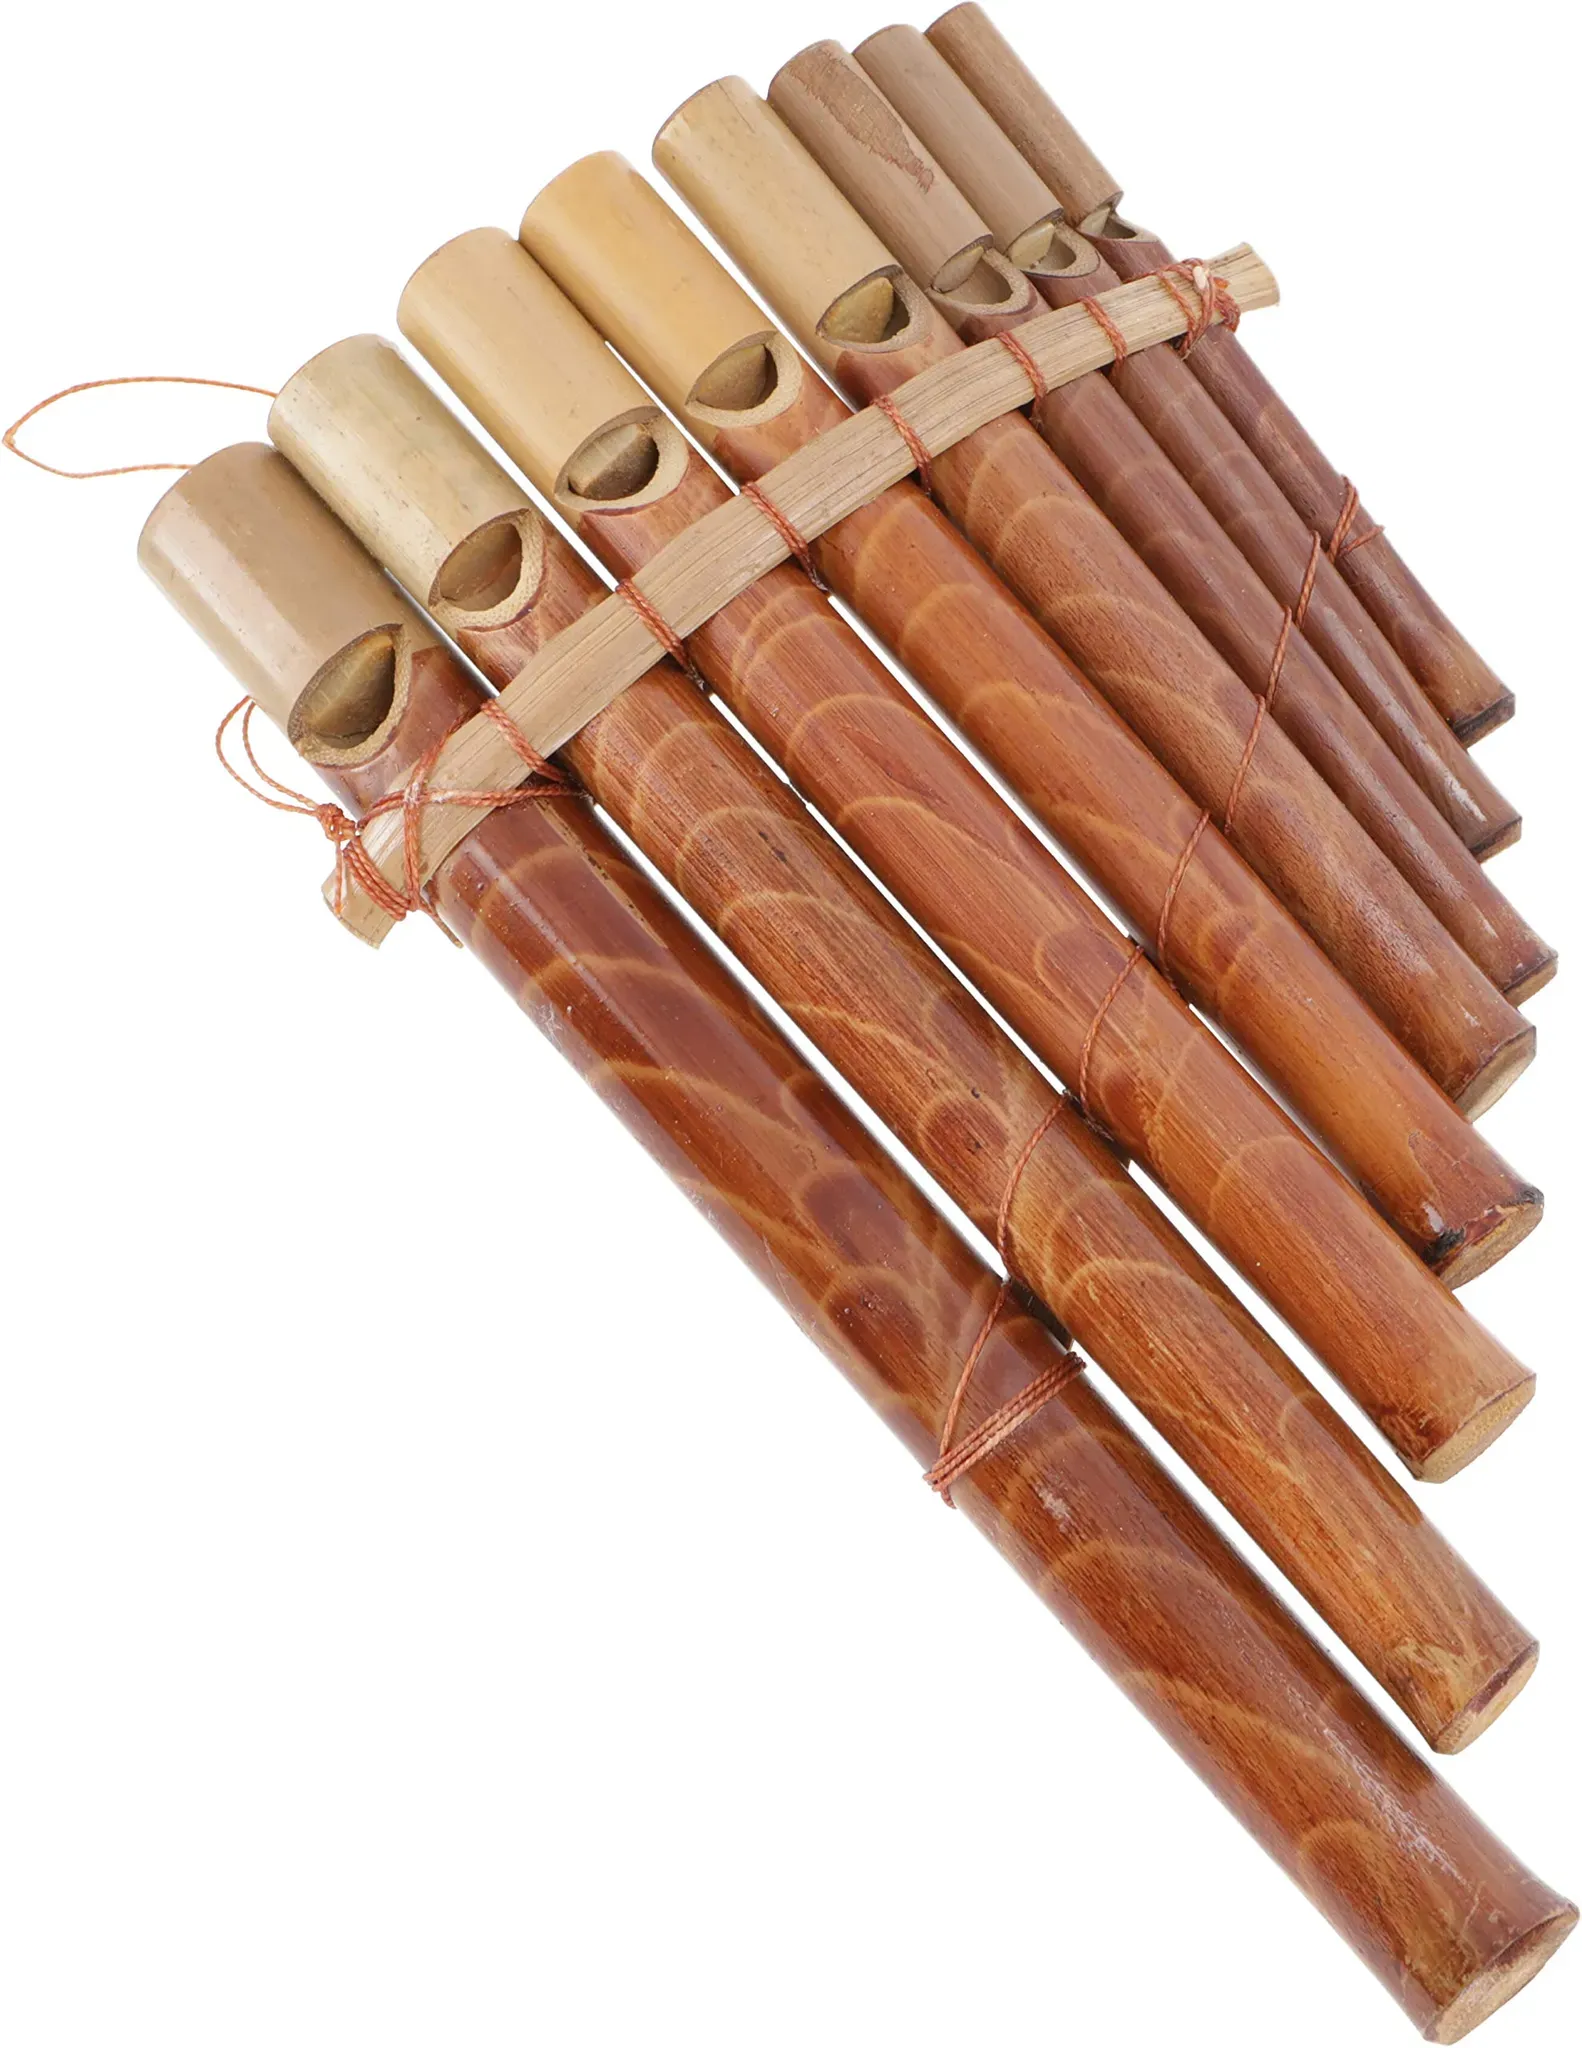 GURU SHOP Musikinstrument aus Holz, Handgearbeitete Pfeife - Panflöte, Braun, 20x12x1 cm, Musikinstrumente